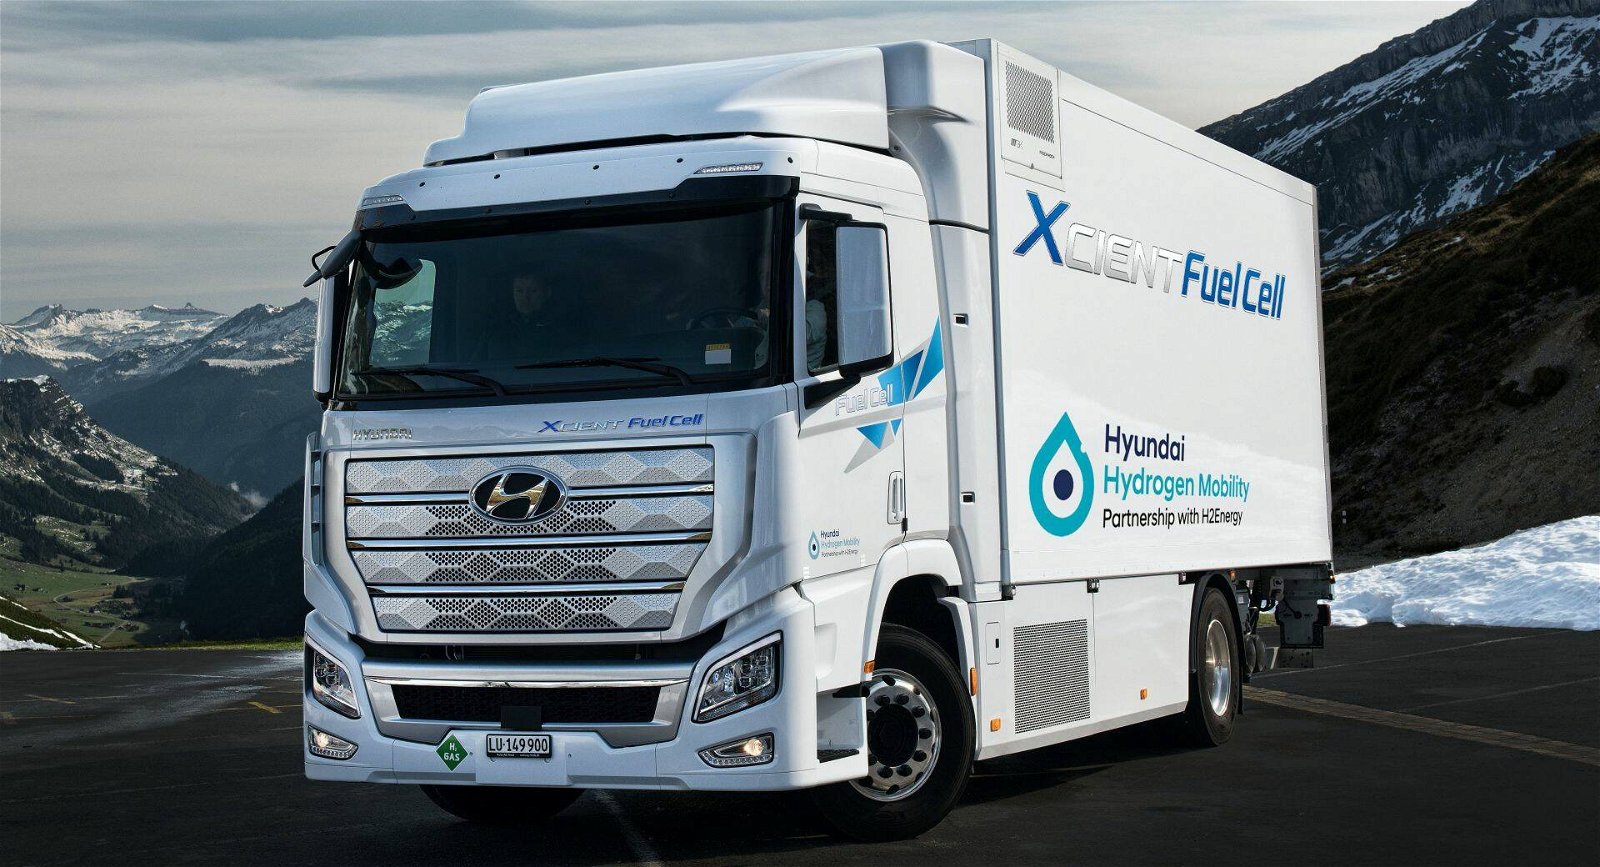 Immagine di Hyundai, percorsi 1,5 milioni di km dai camion XCIENT Fuel Cell